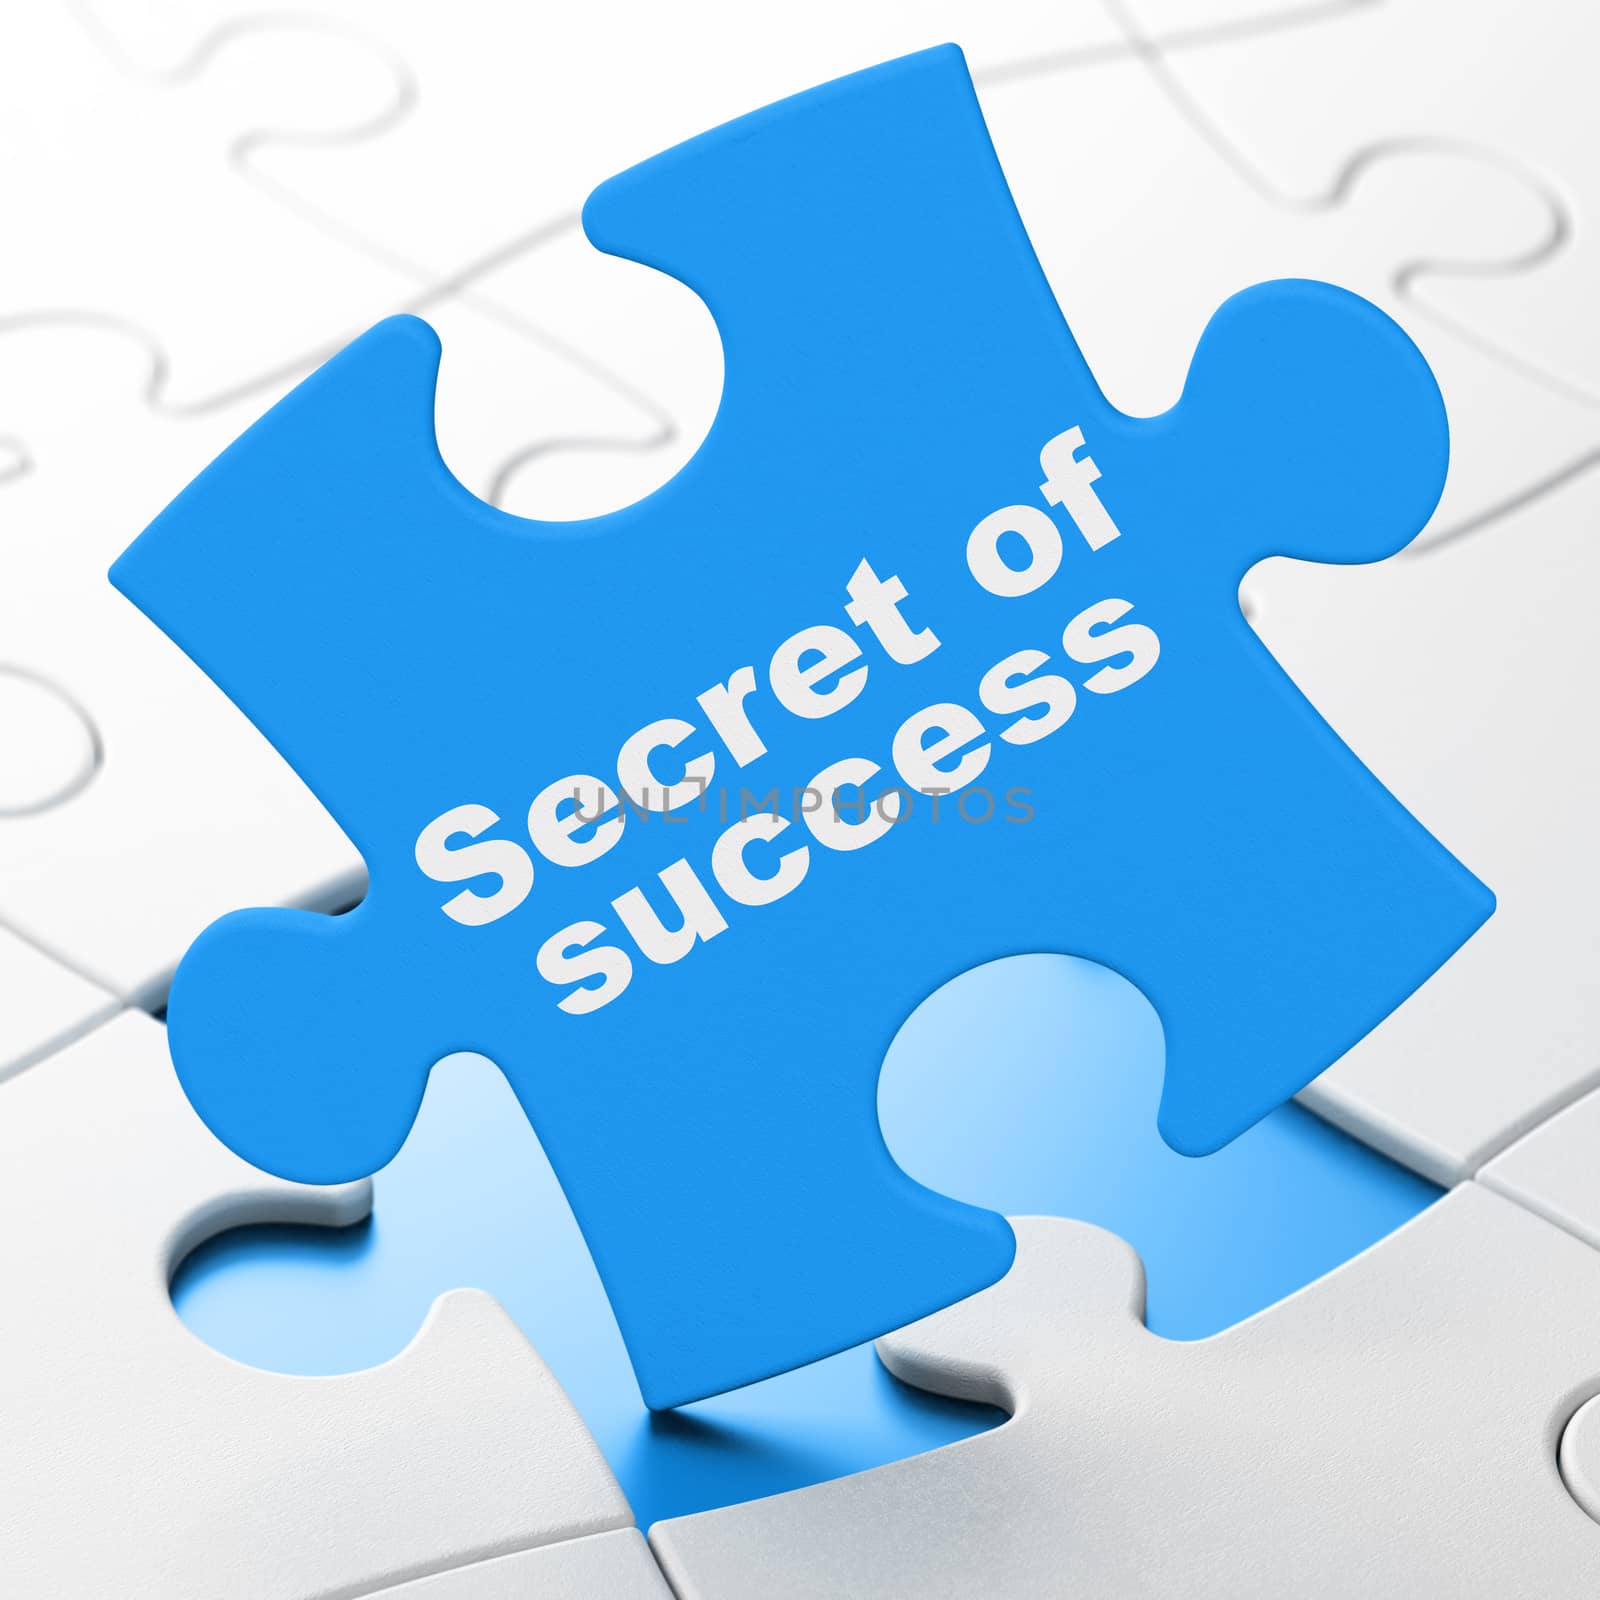 Finance concept: Secret of Success on Blue puzzle pieces background, 3D rendering